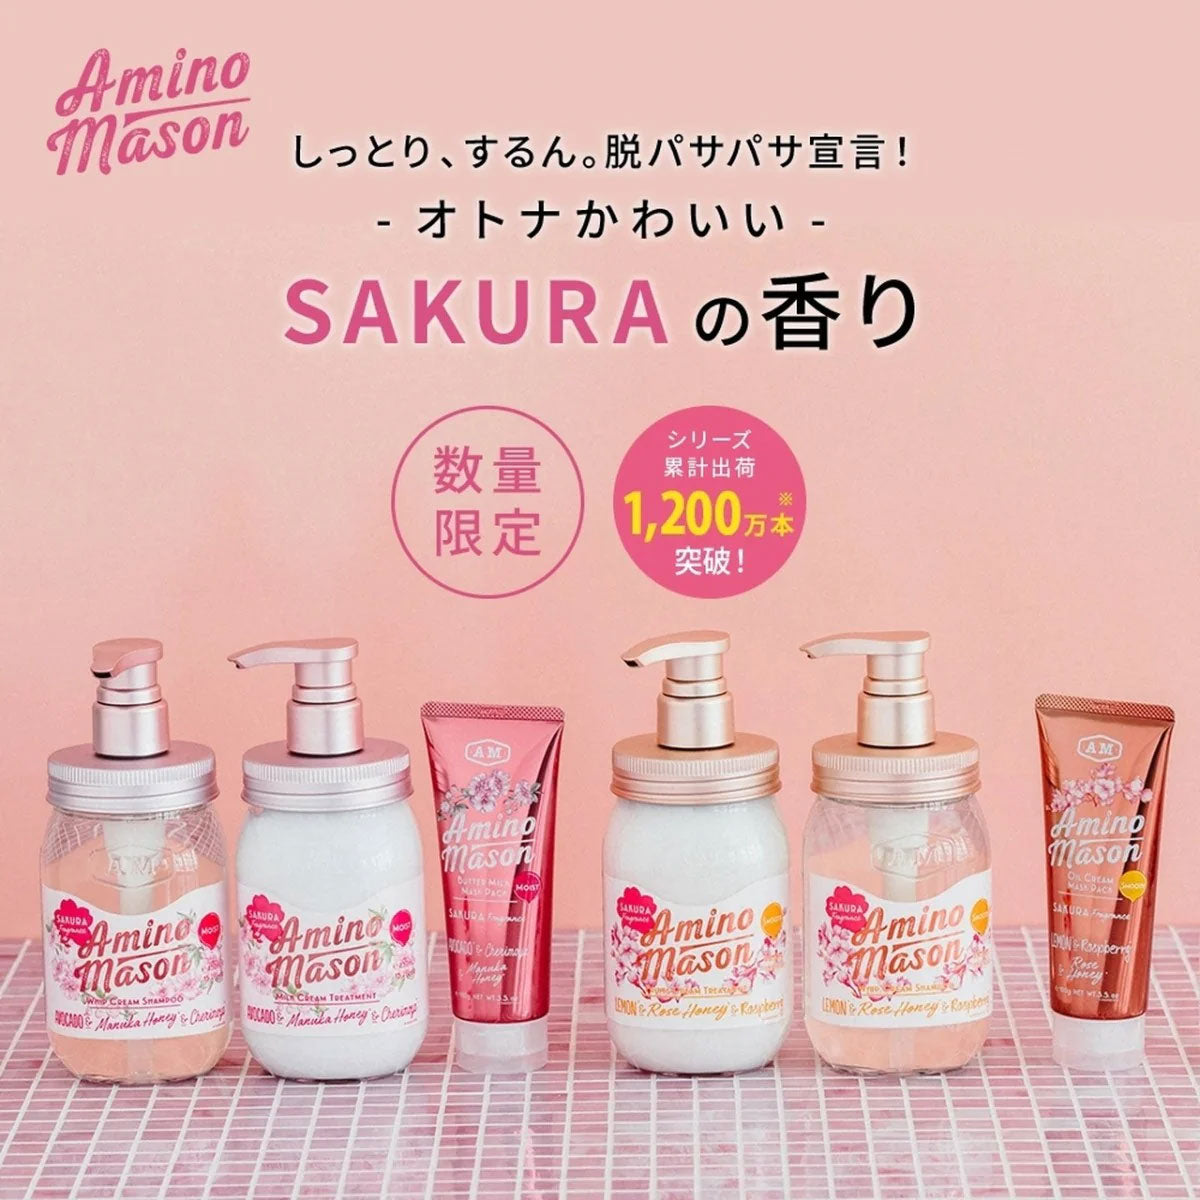 日本AMINO MASON氨基酸清爽无硅洗发护发3件套装#樱花限定款 450ml+450ml+100g 